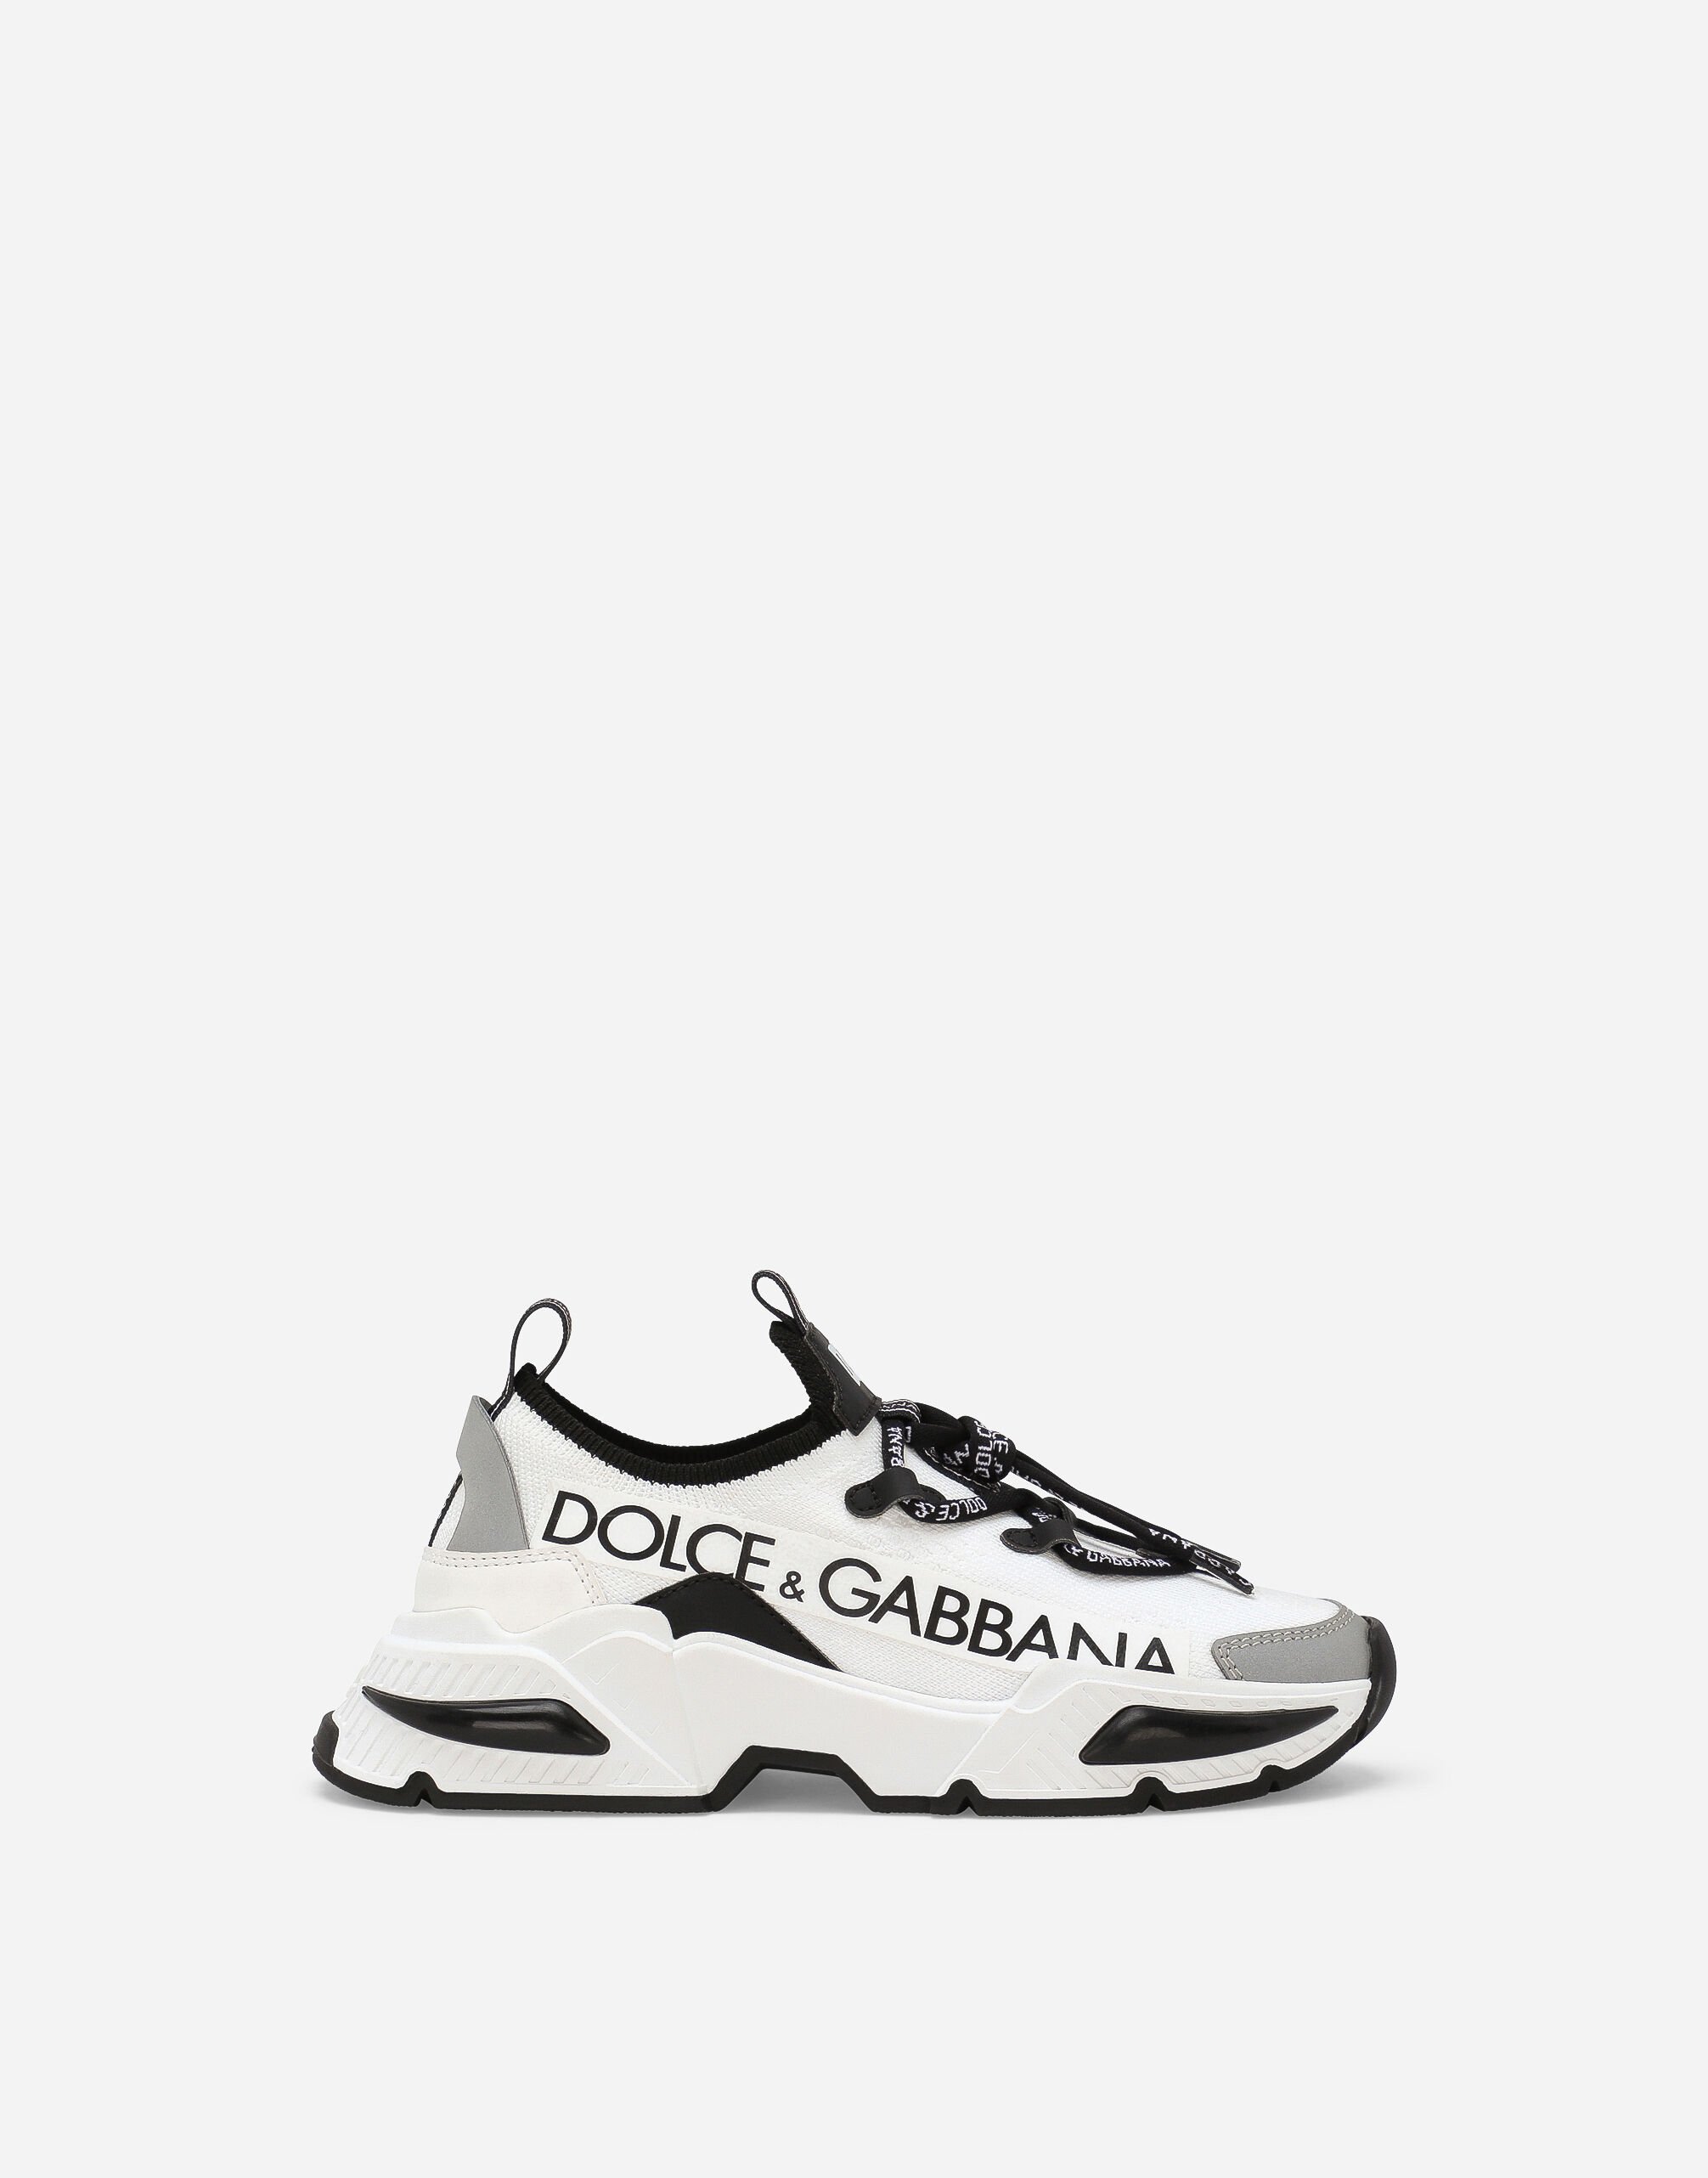 Dolce & Gabbana Airmaster 拼接材质运动鞋 白 DA5163AB309